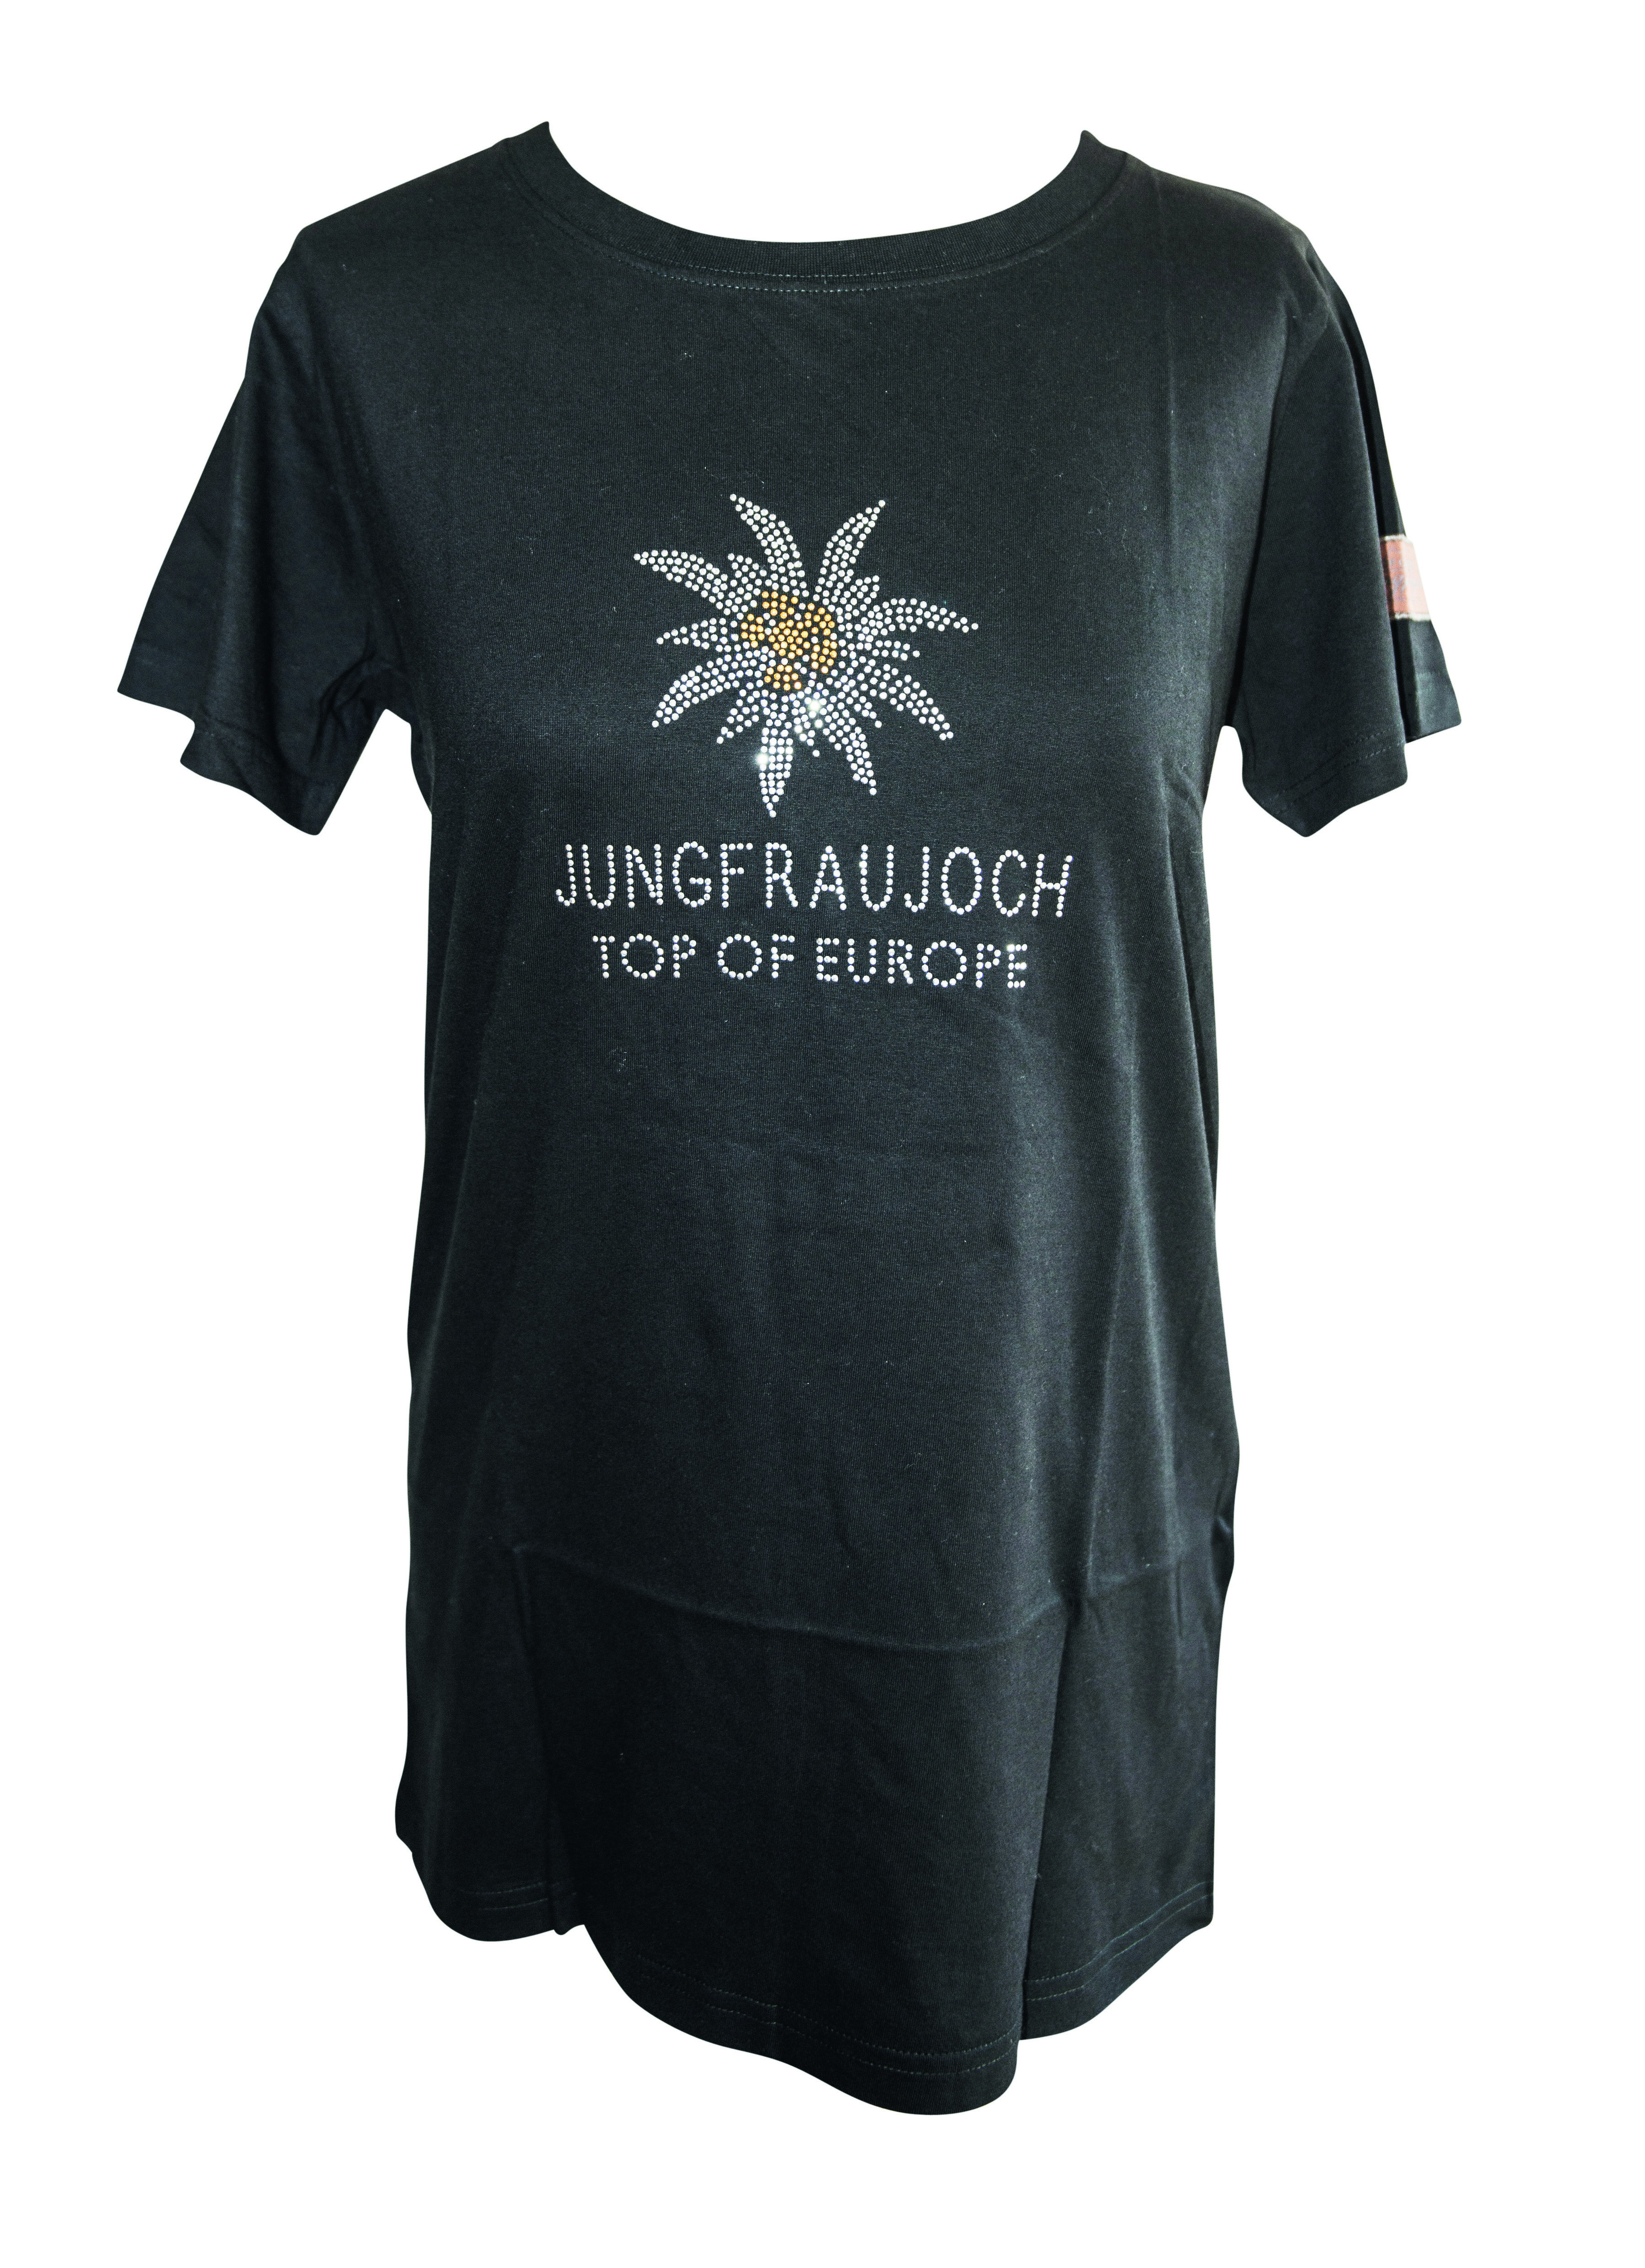 T-Shirt Jungfraujoch Official Collection, Damen, schwarz mit Edelweis 